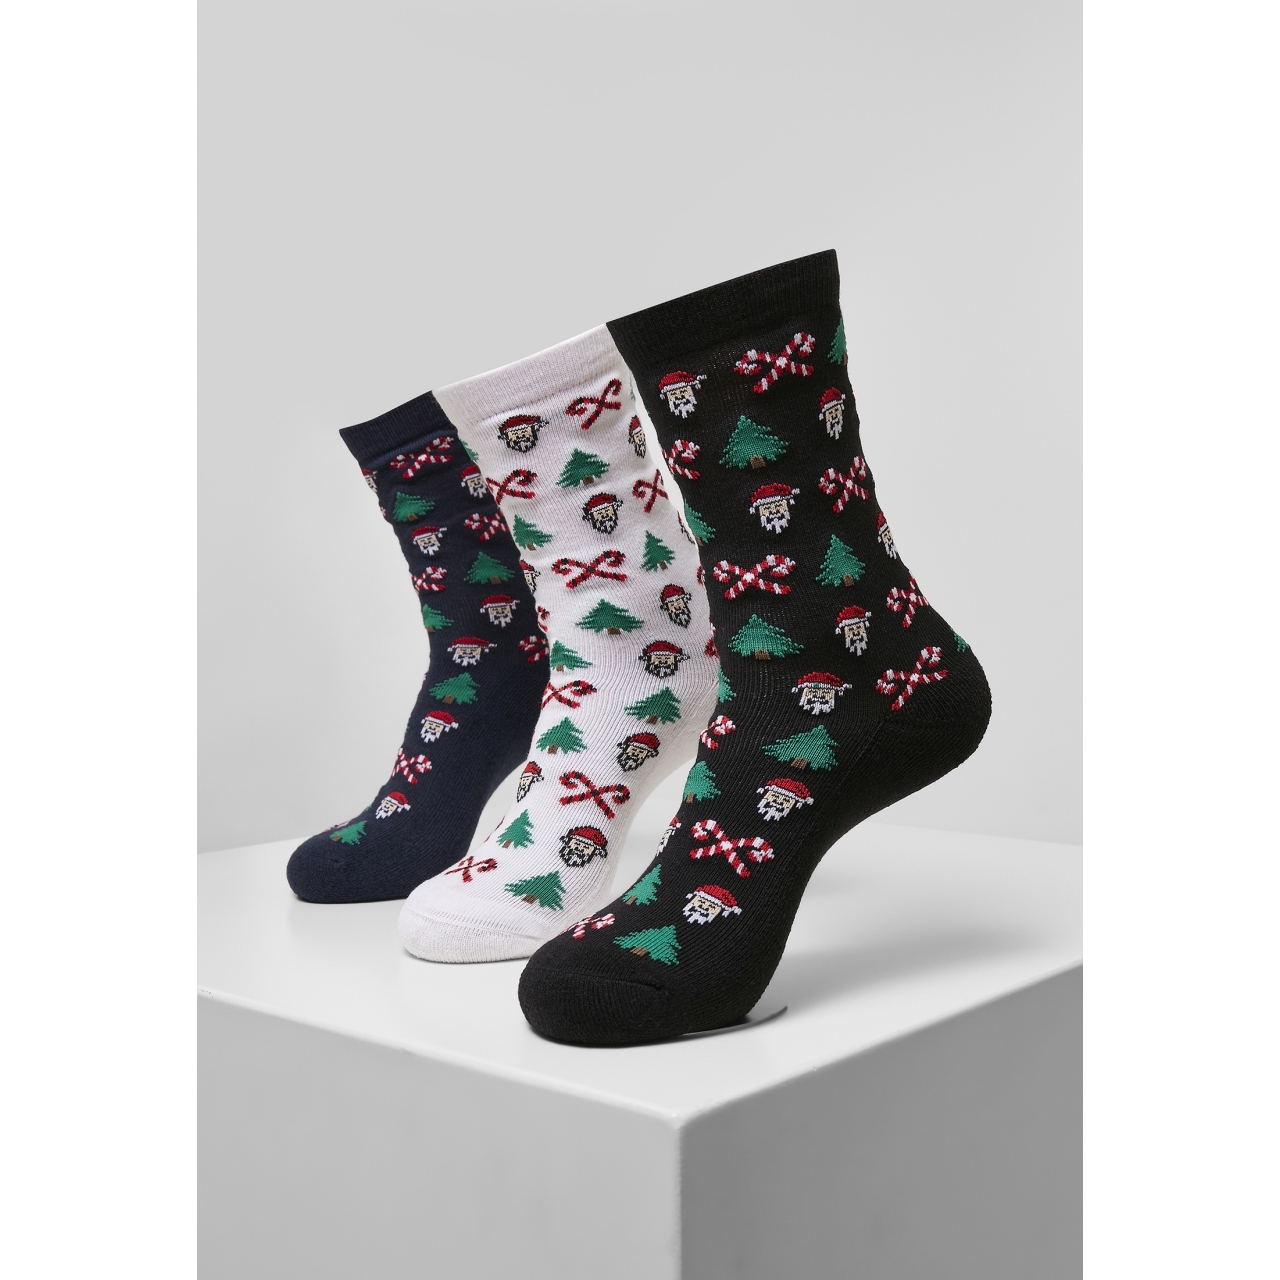 Ponožky Urban Classics Grumpy Santa Christmas 3 páry (navy, bílé, černéú, 39-42